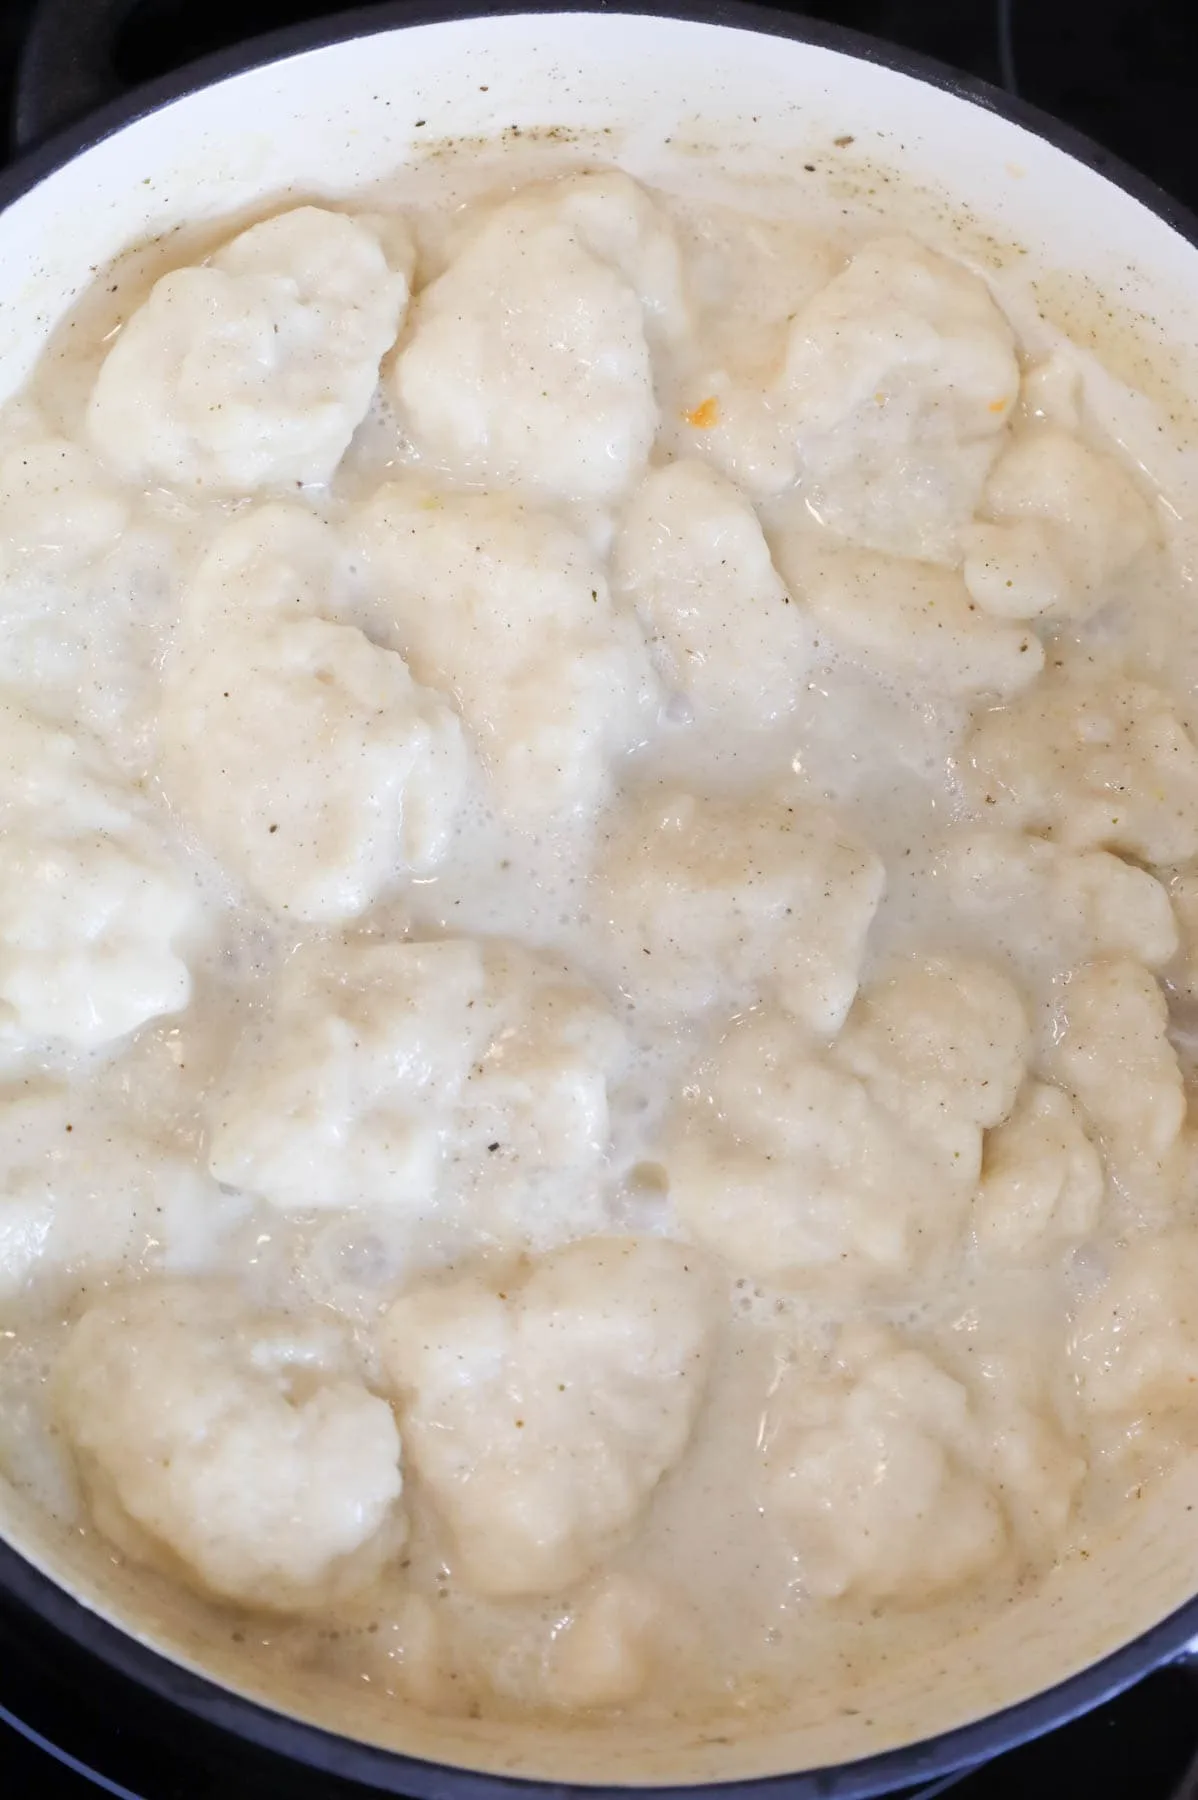 Bisquick dumplings cooking in creamy broth